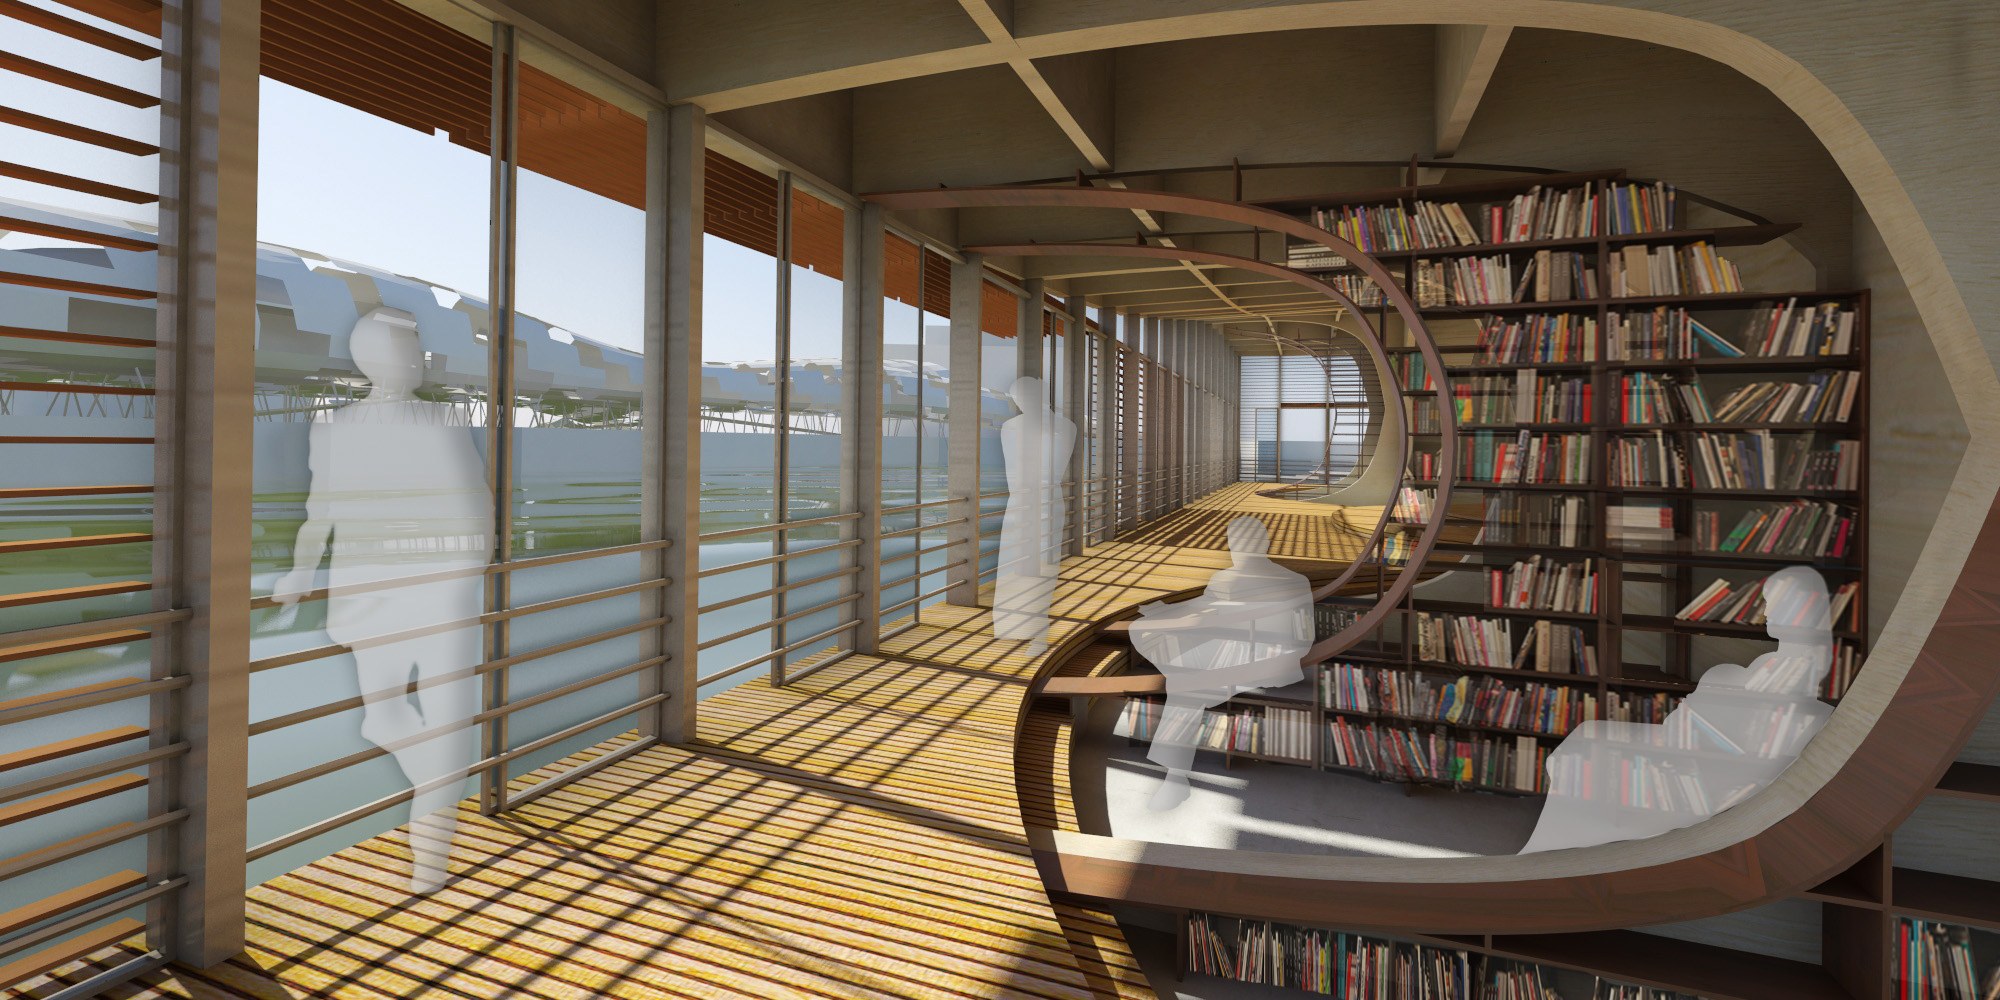 Библиотека будущего